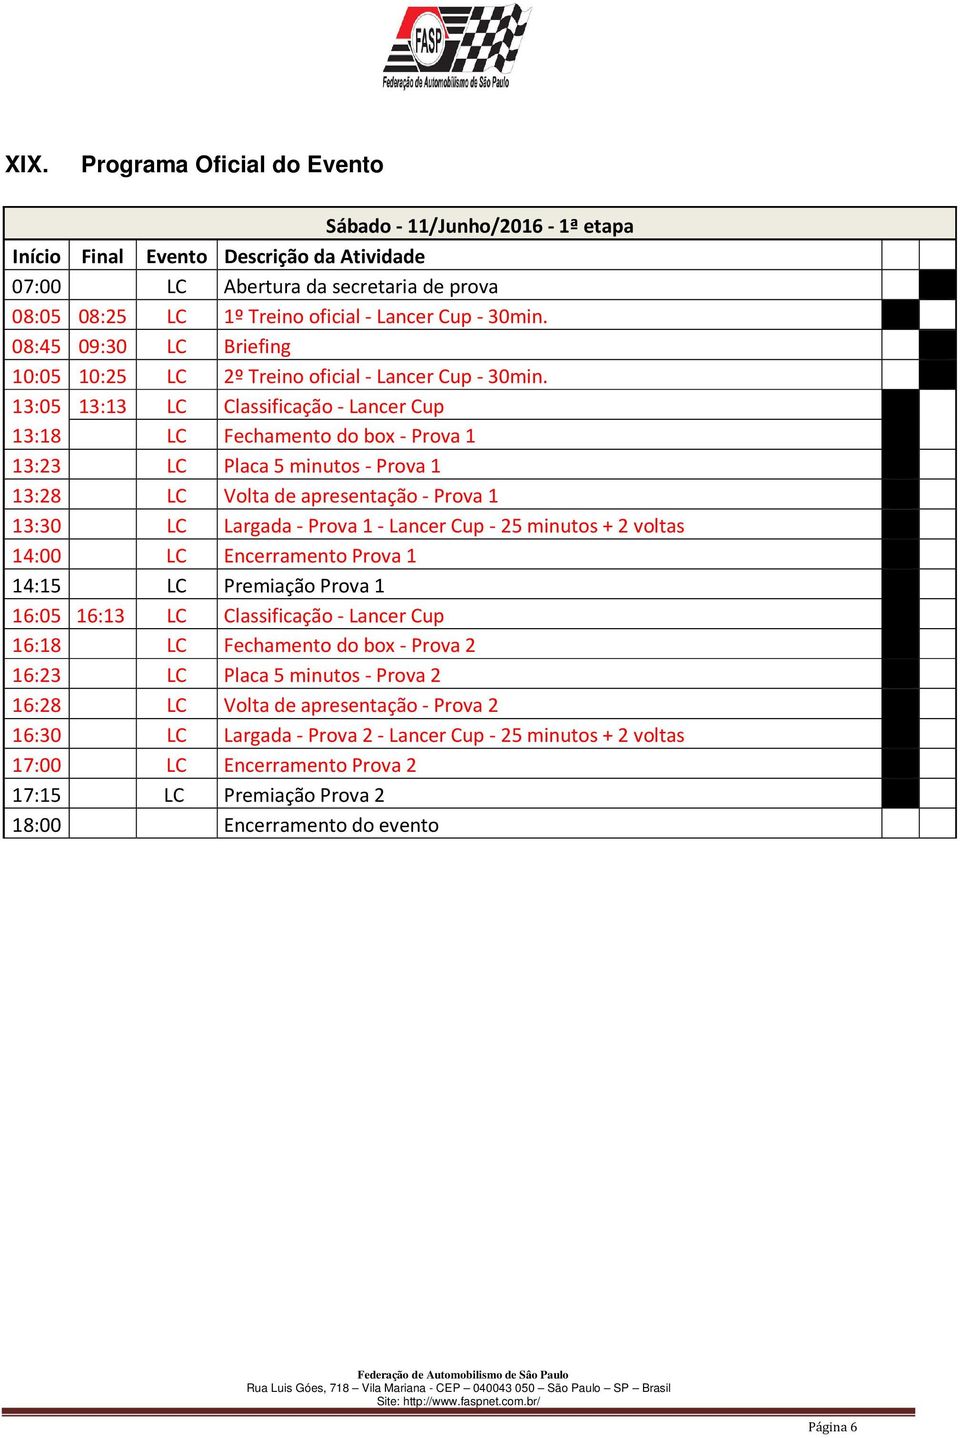 13:05 13:13 LC Classificação - Lancer Cup 13:18 LC Fechamento do box - Prova 1 13:23 LC Placa 5 minutos - Prova 1 13:28 LC Volta de apresentação - Prova 1 13:30 LC Largada - Prova 1 - Lancer Cup - 25